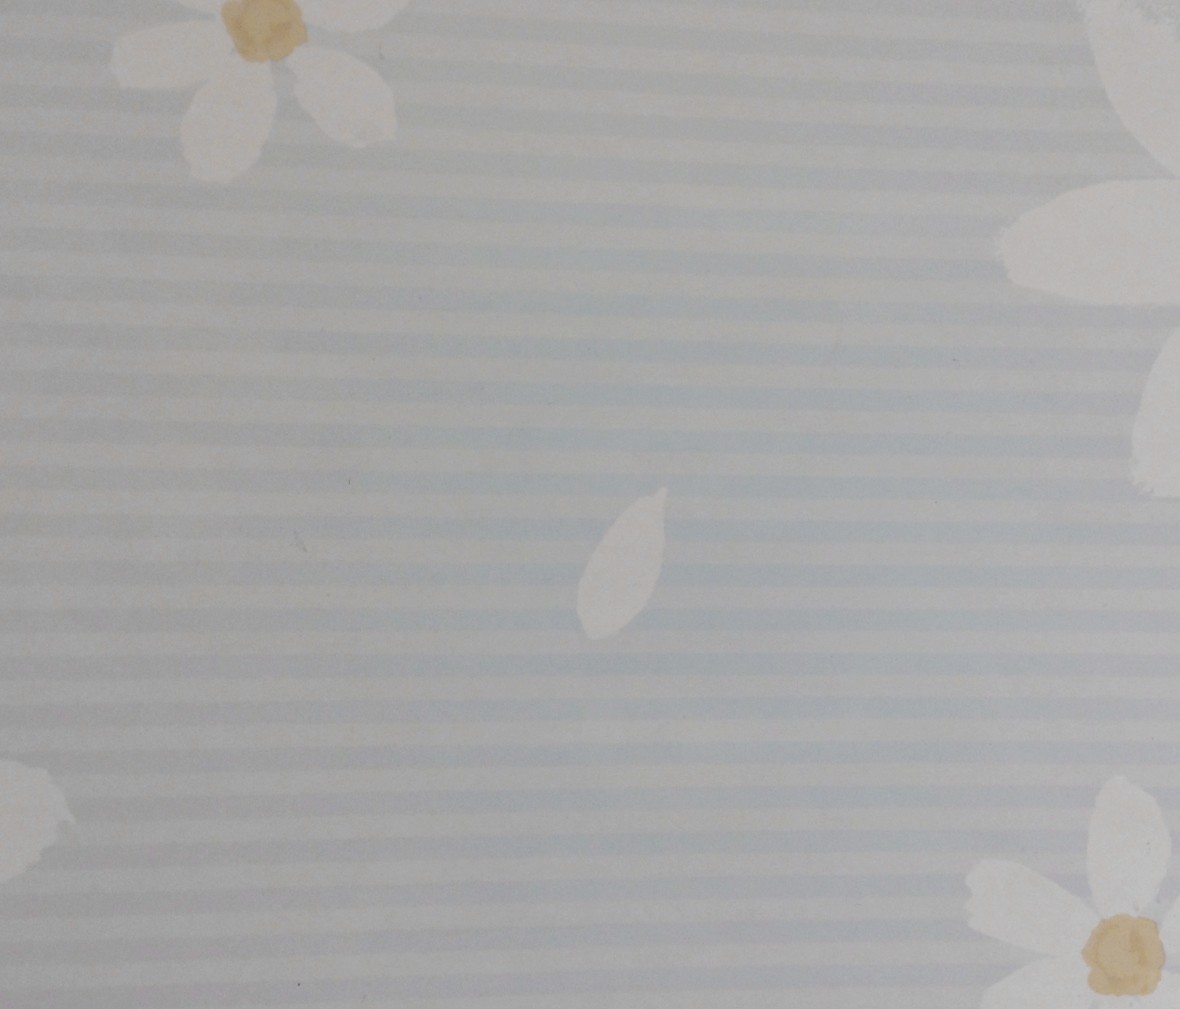 格莱美壁纸 梦想乐园系列 KJ52104型号 进口环保纯纸墙纸 细节展示